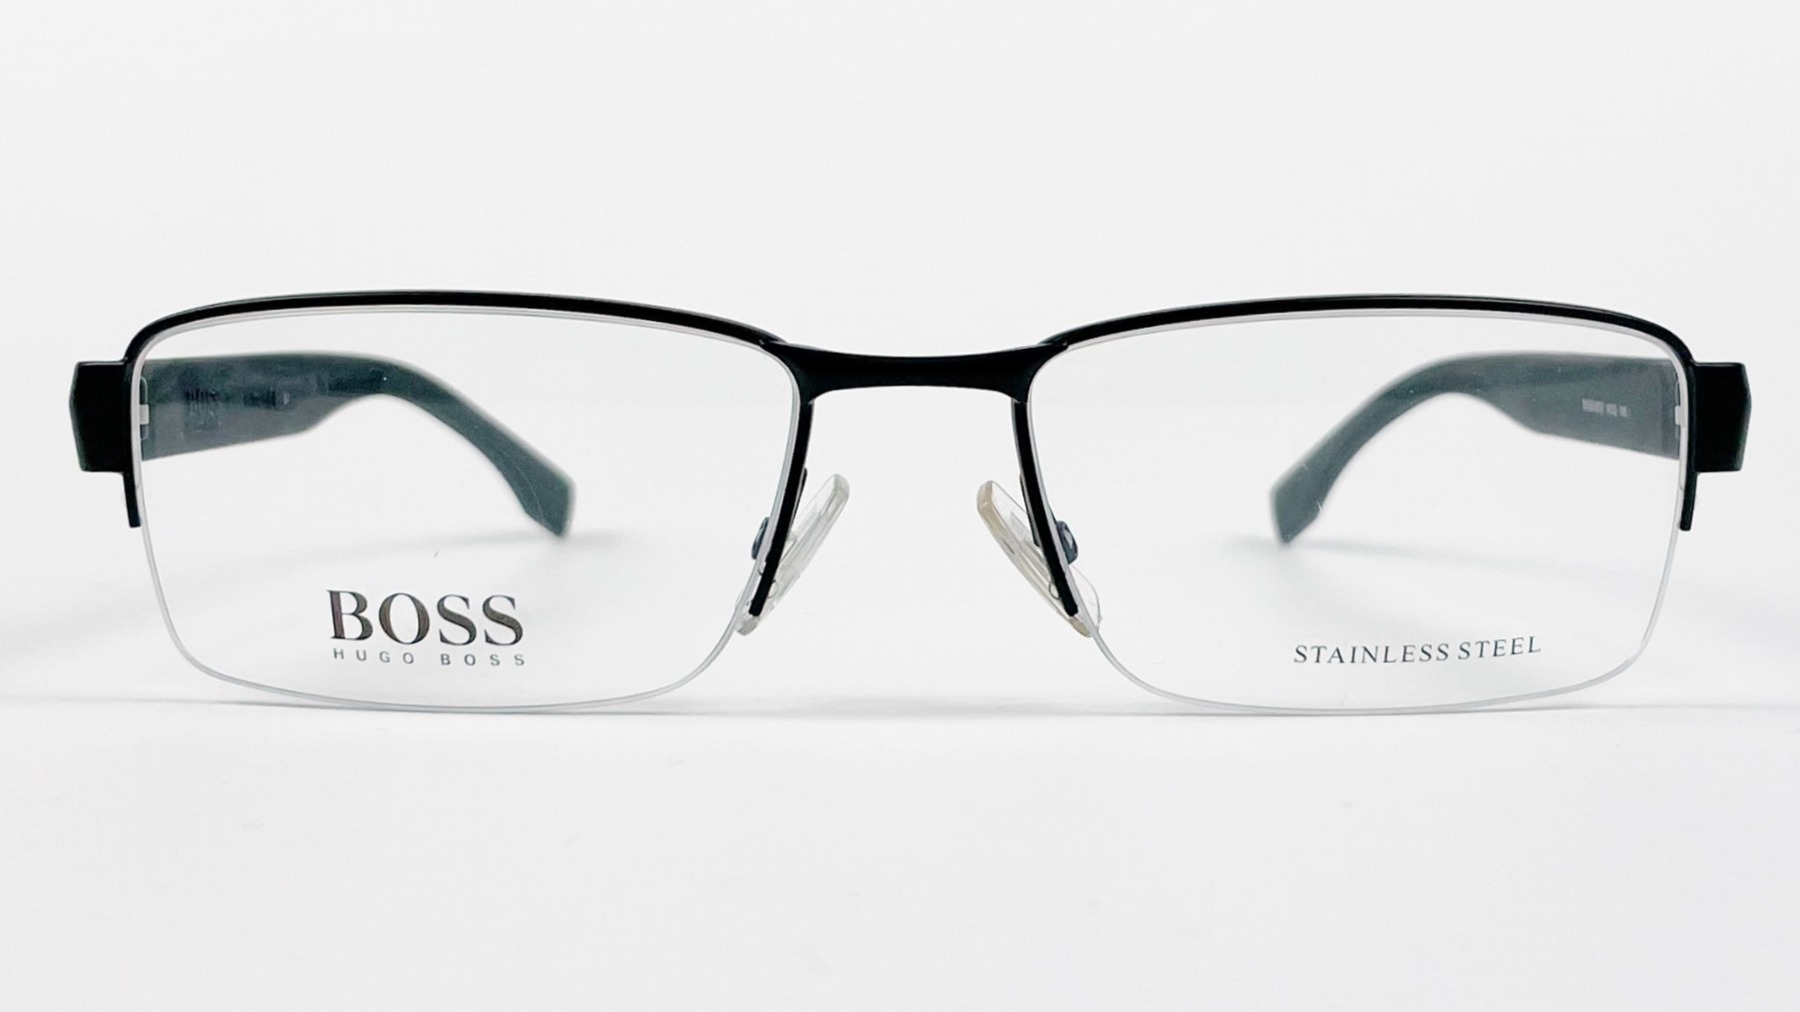 HUGO BOSS 0837 KCQ, Korean glasses, sunglasses, eyeglasses, glasses